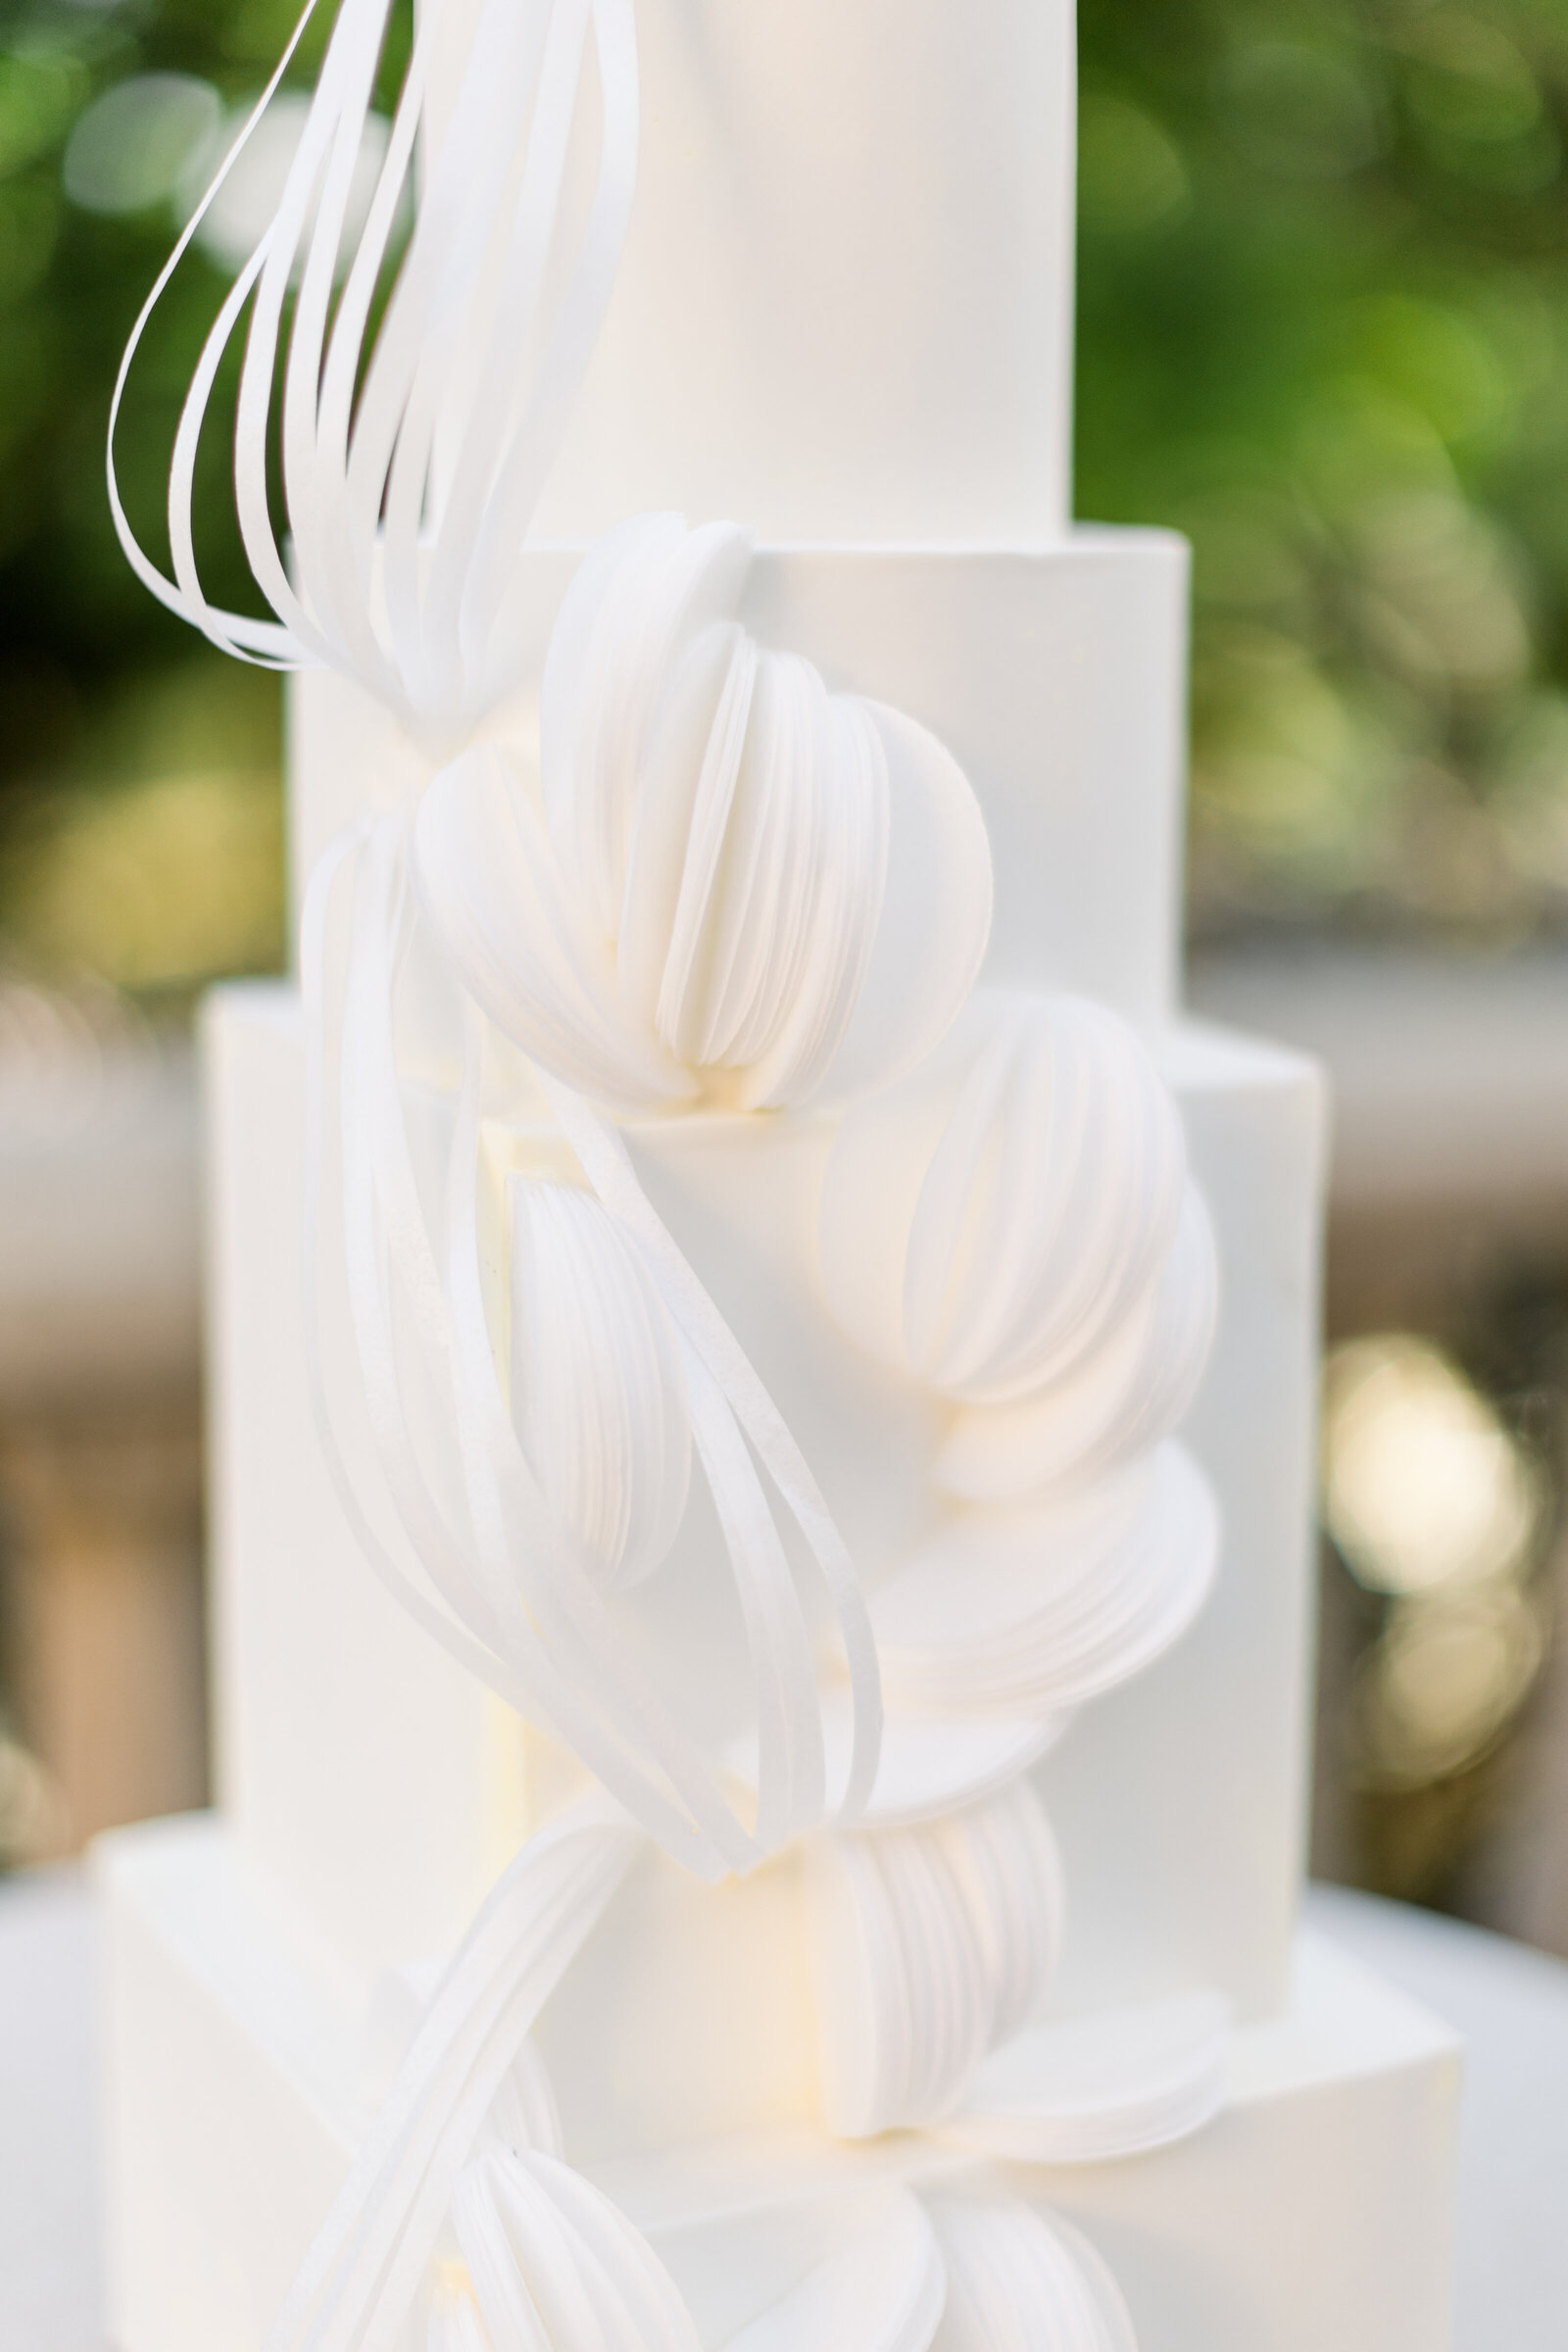 white wedding cake minimal decoration